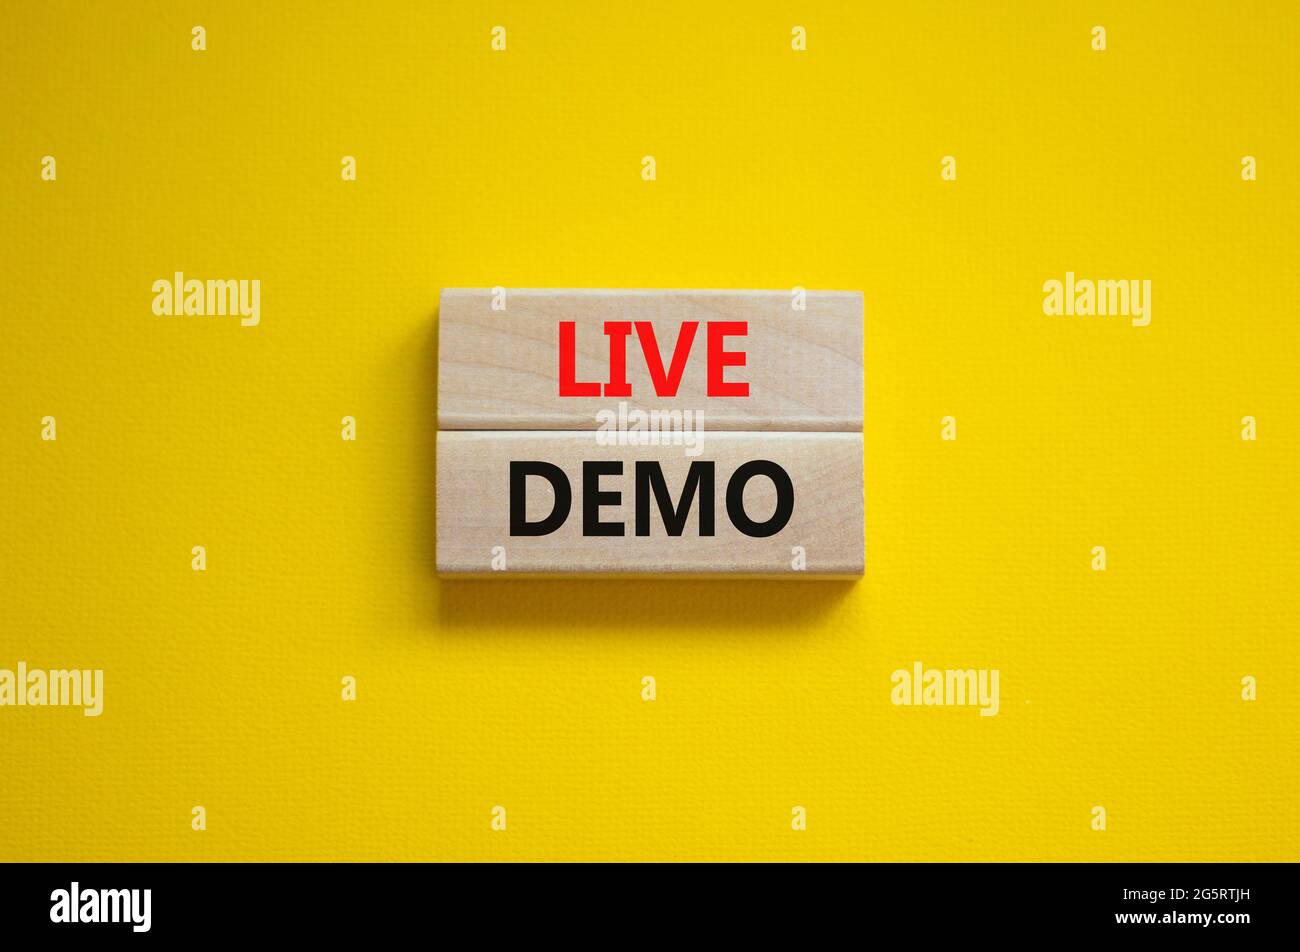 Simbolo della demo dal vivo. Parole concettuali "Live demo" su blocchi di legno su uno splendido sfondo giallo. Spazio di copia. Business e demo dal vivo. Foto Stock